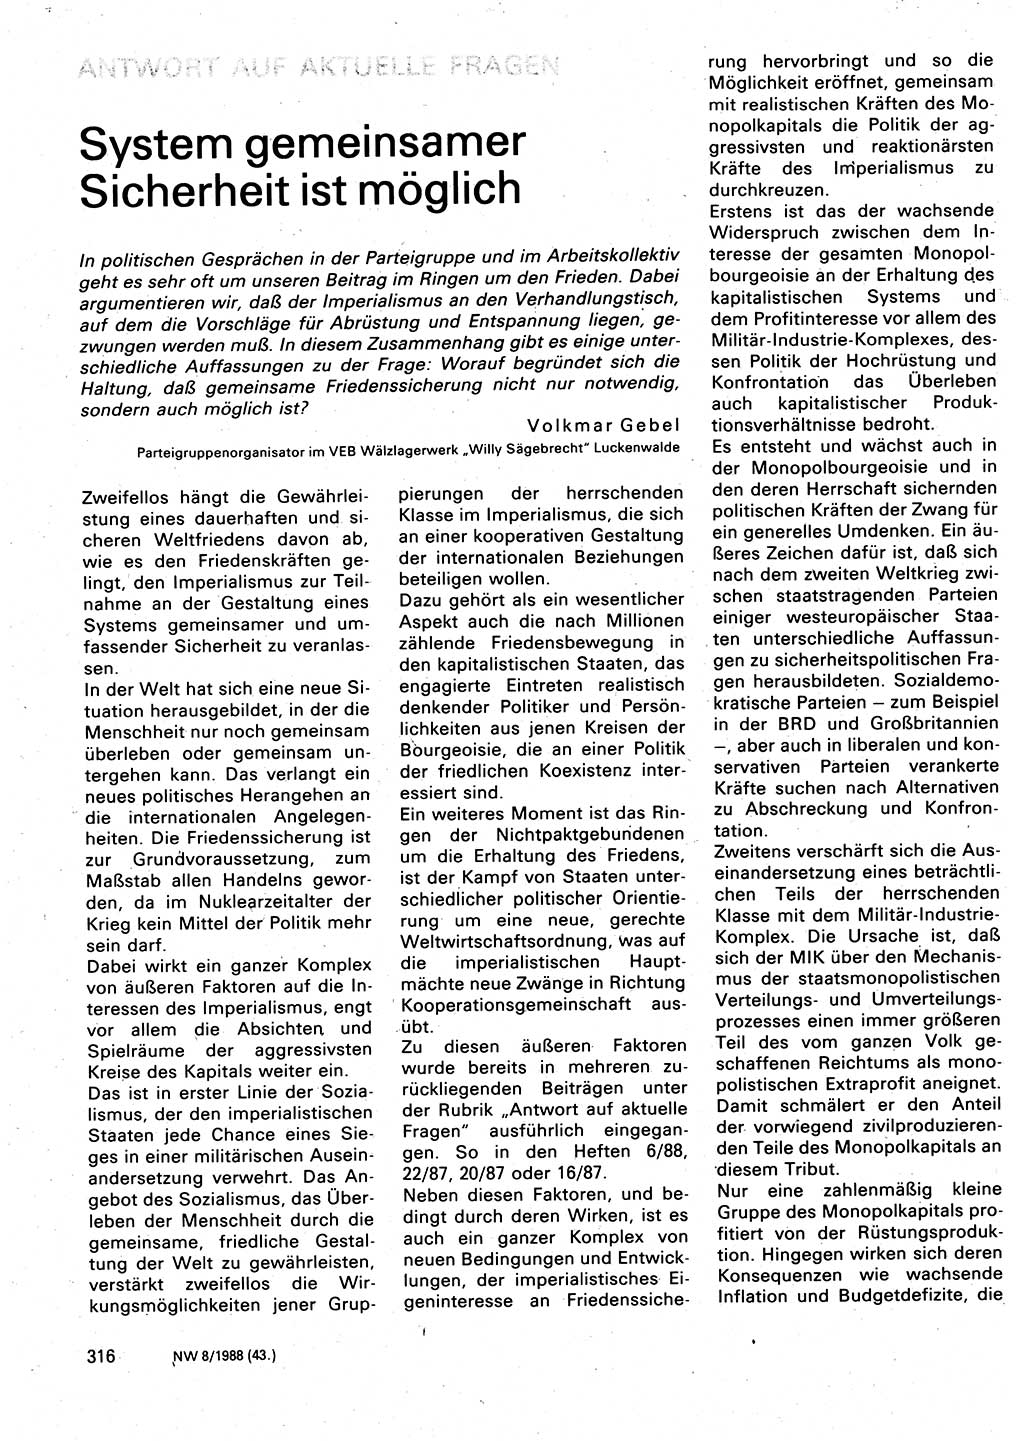 Neuer Weg (NW), Organ des Zentralkomitees (ZK) der SED (Sozialistische Einheitspartei Deutschlands) für Fragen des Parteilebens, 43. Jahrgang [Deutsche Demokratische Republik (DDR)] 1988, Seite 316 (NW ZK SED DDR 1988, S. 316)